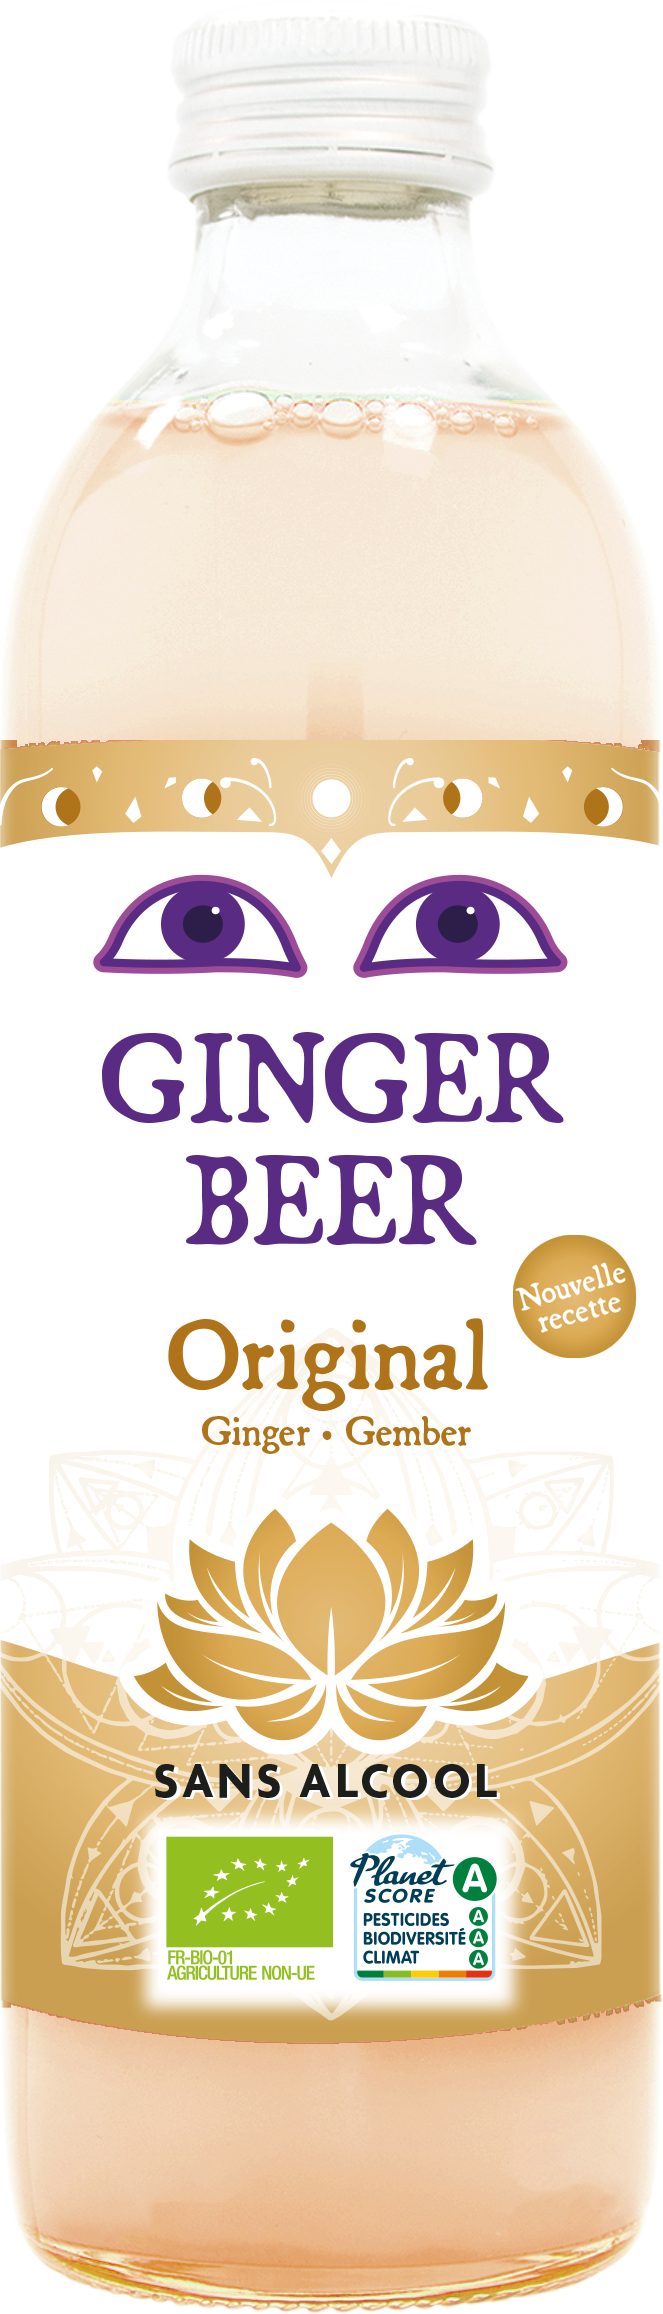 Ginger Beer Original